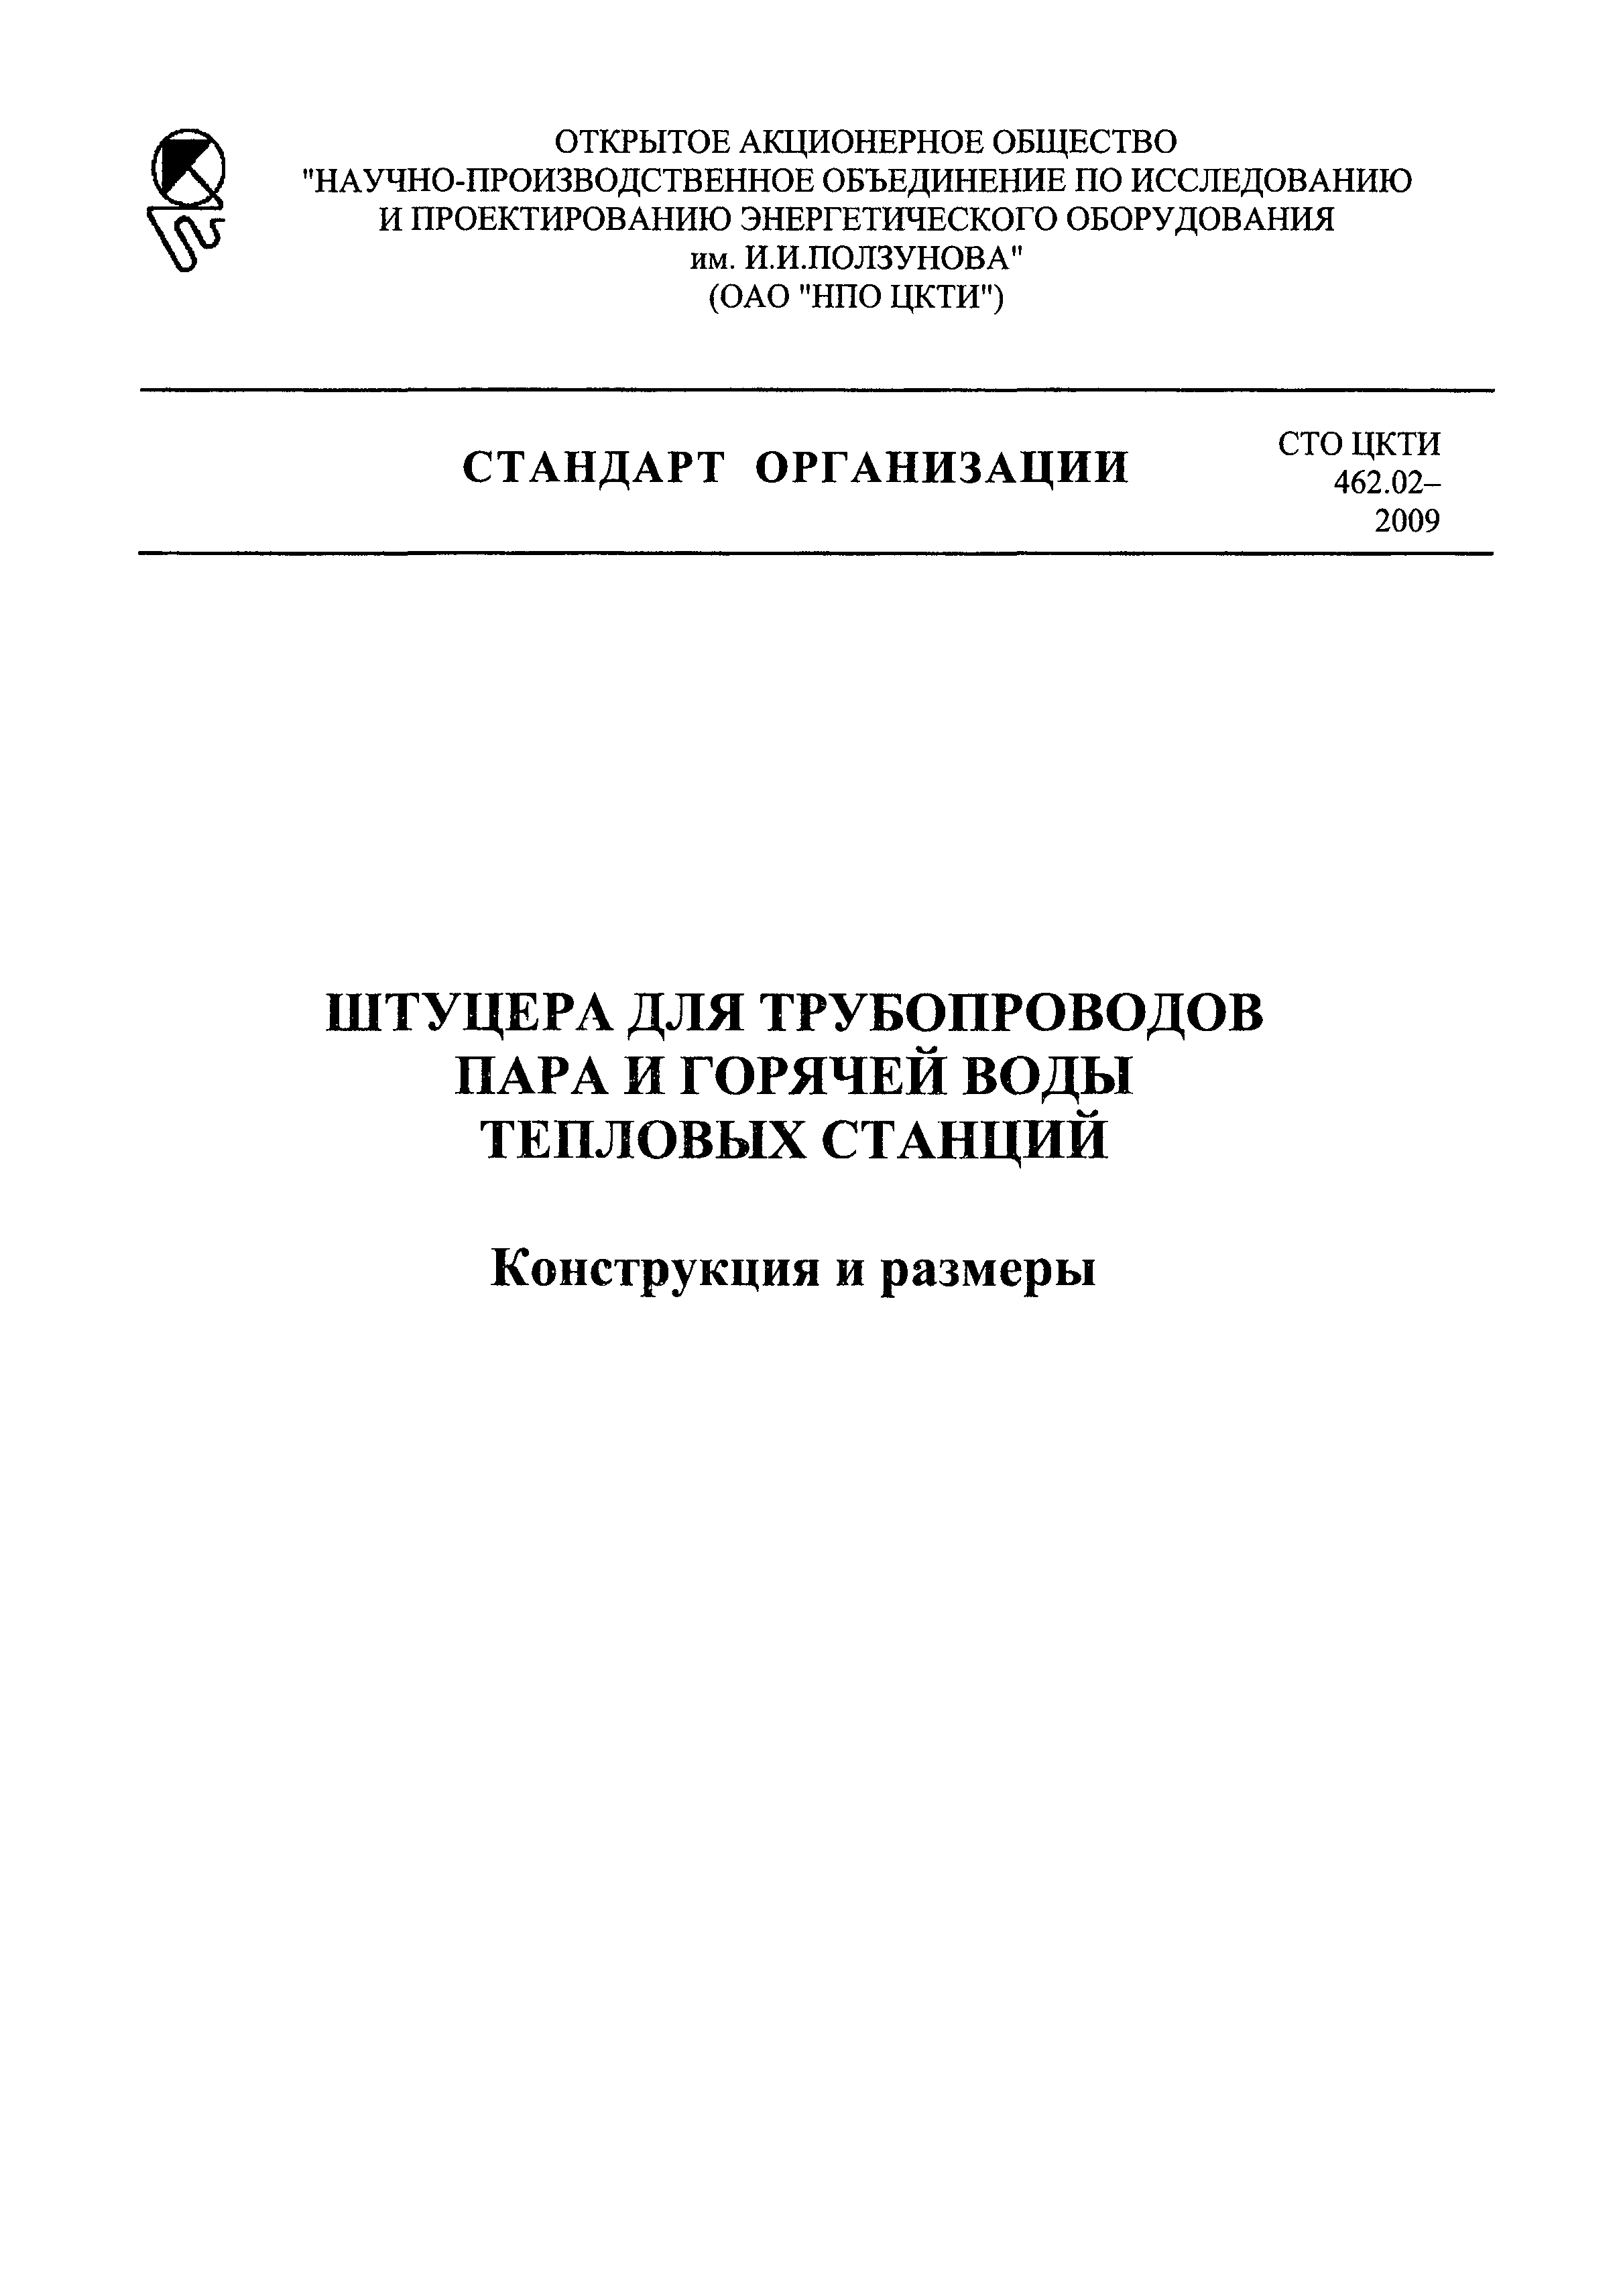 СТО ЦКТИ 462.02-2009